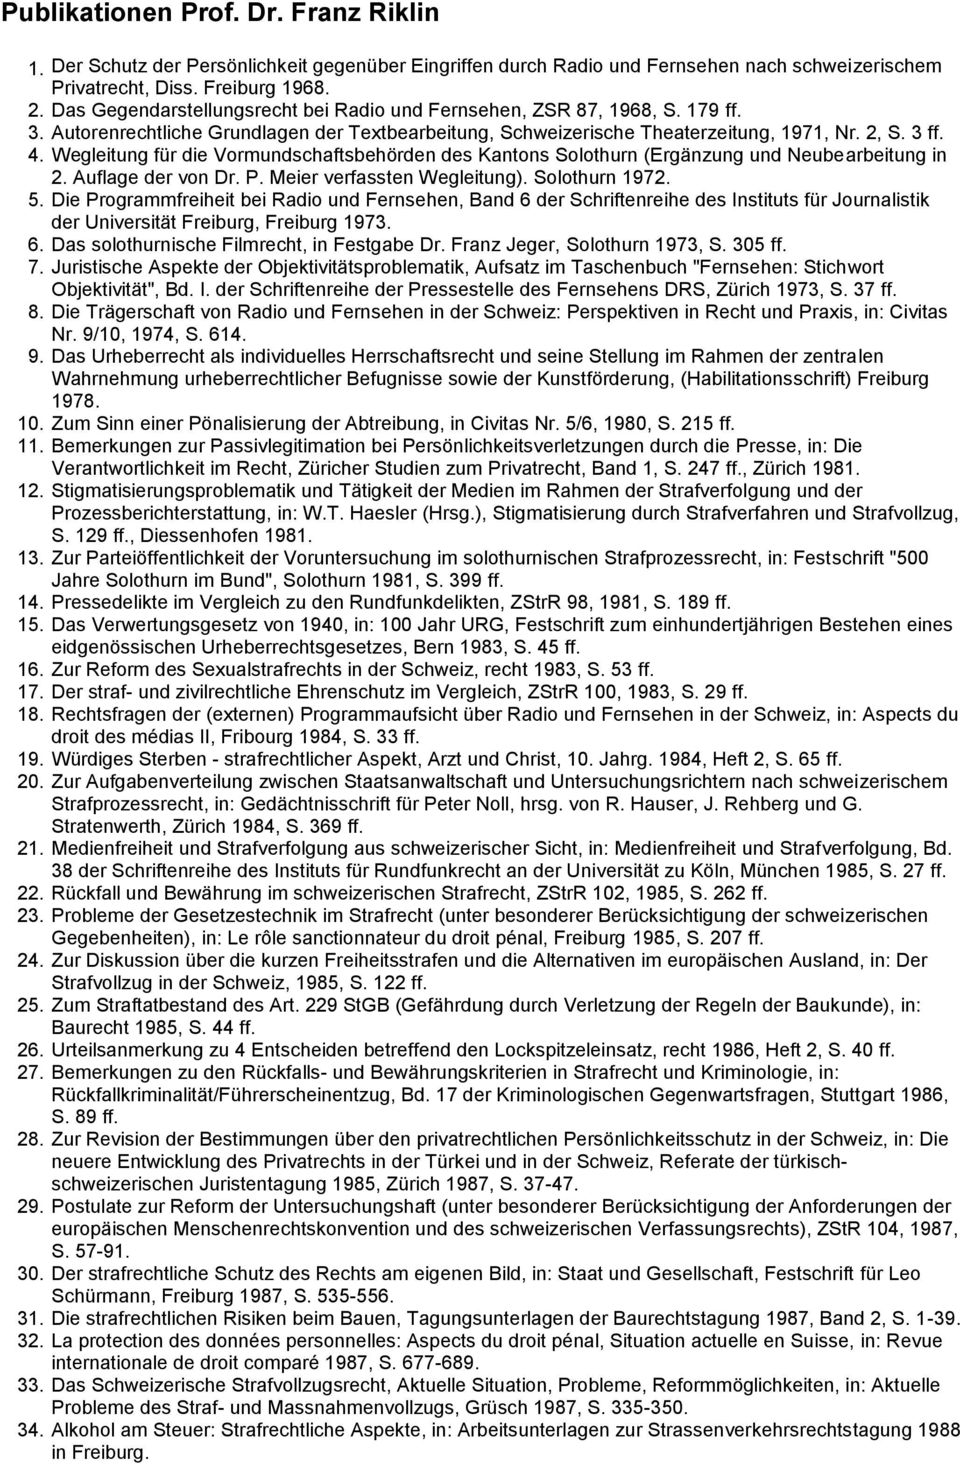 Wegleitung für die Vormundschaftsbehörden des Kantons Solothurn (Ergänzung und Neubearbeitung in 2. Auflage der von Dr. P. Meier verfassten Wegleitung). Solothurn 1972. 5.